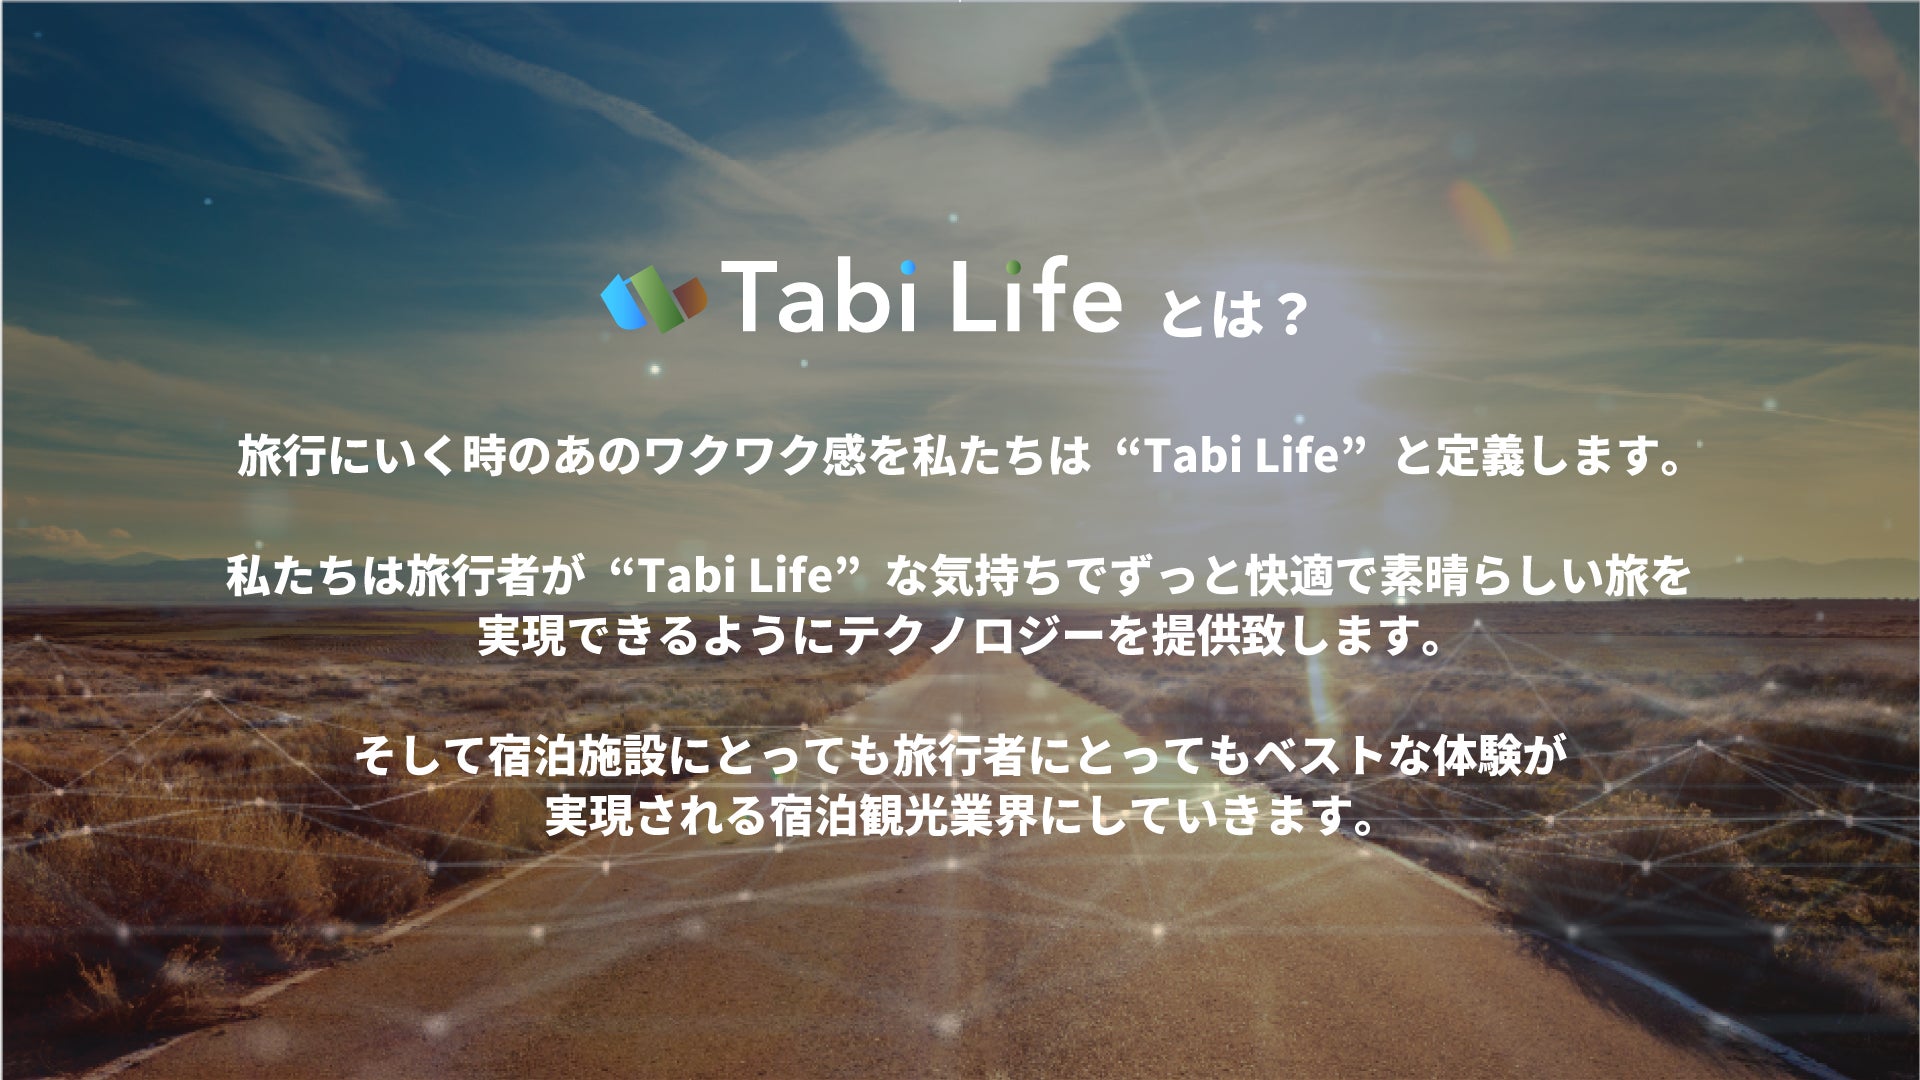 ホスピタリティ業界のデジタル変革を進めるスタートアップ企業 Tabi Life株式会社（旧名 LYNKED（株））が、有数の企業やエンジェル投資家を引き受け先に総額6400万円を調達